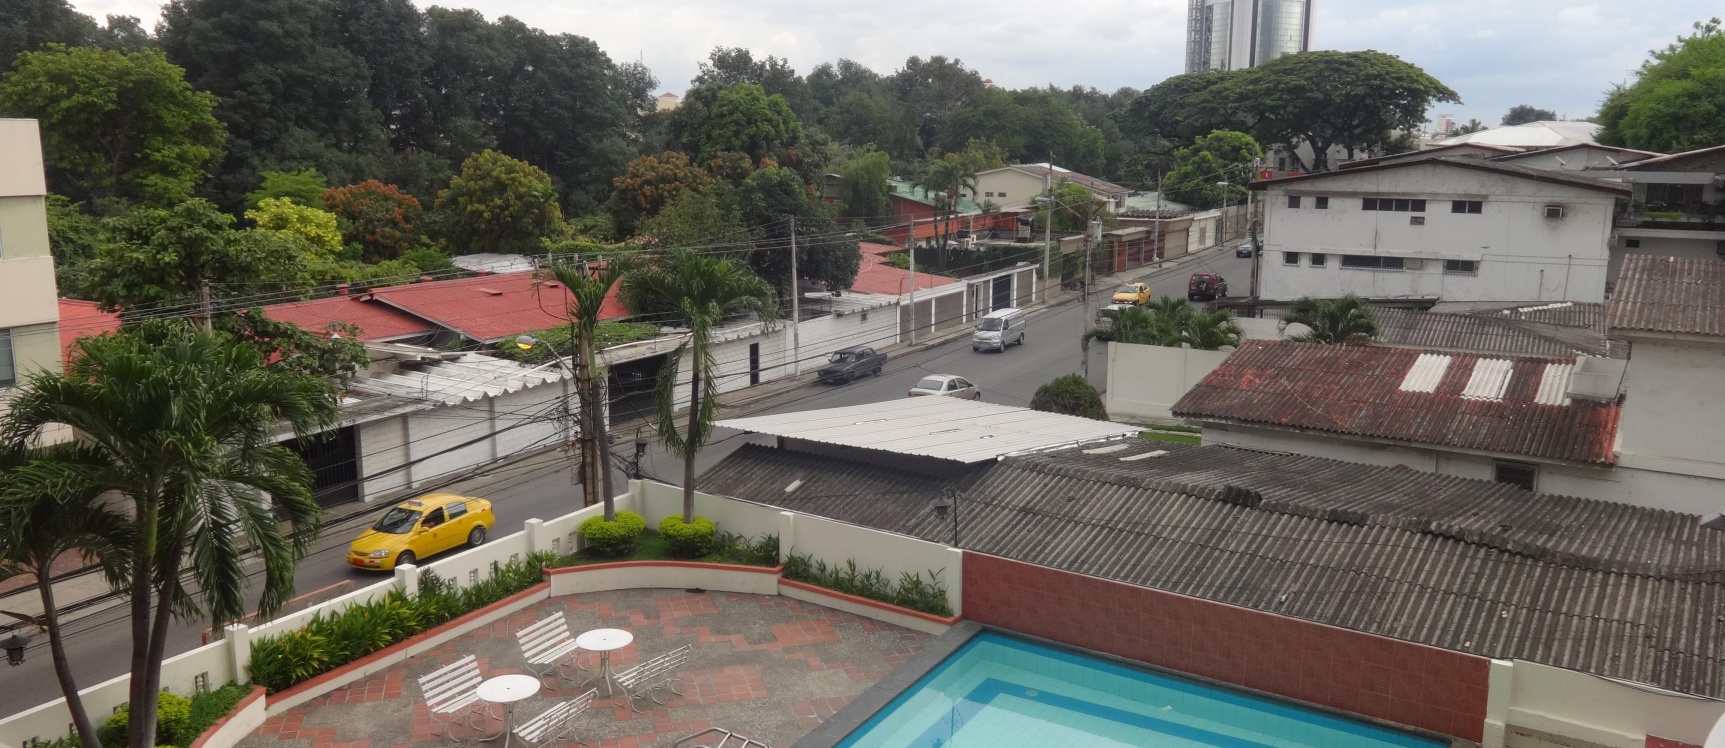 GeoBienes - Vendo Departamento en Urdesa, Guayaquil  - Plusvalia Guayaquil Casas de venta y alquiler Inmobiliaria Ecuador